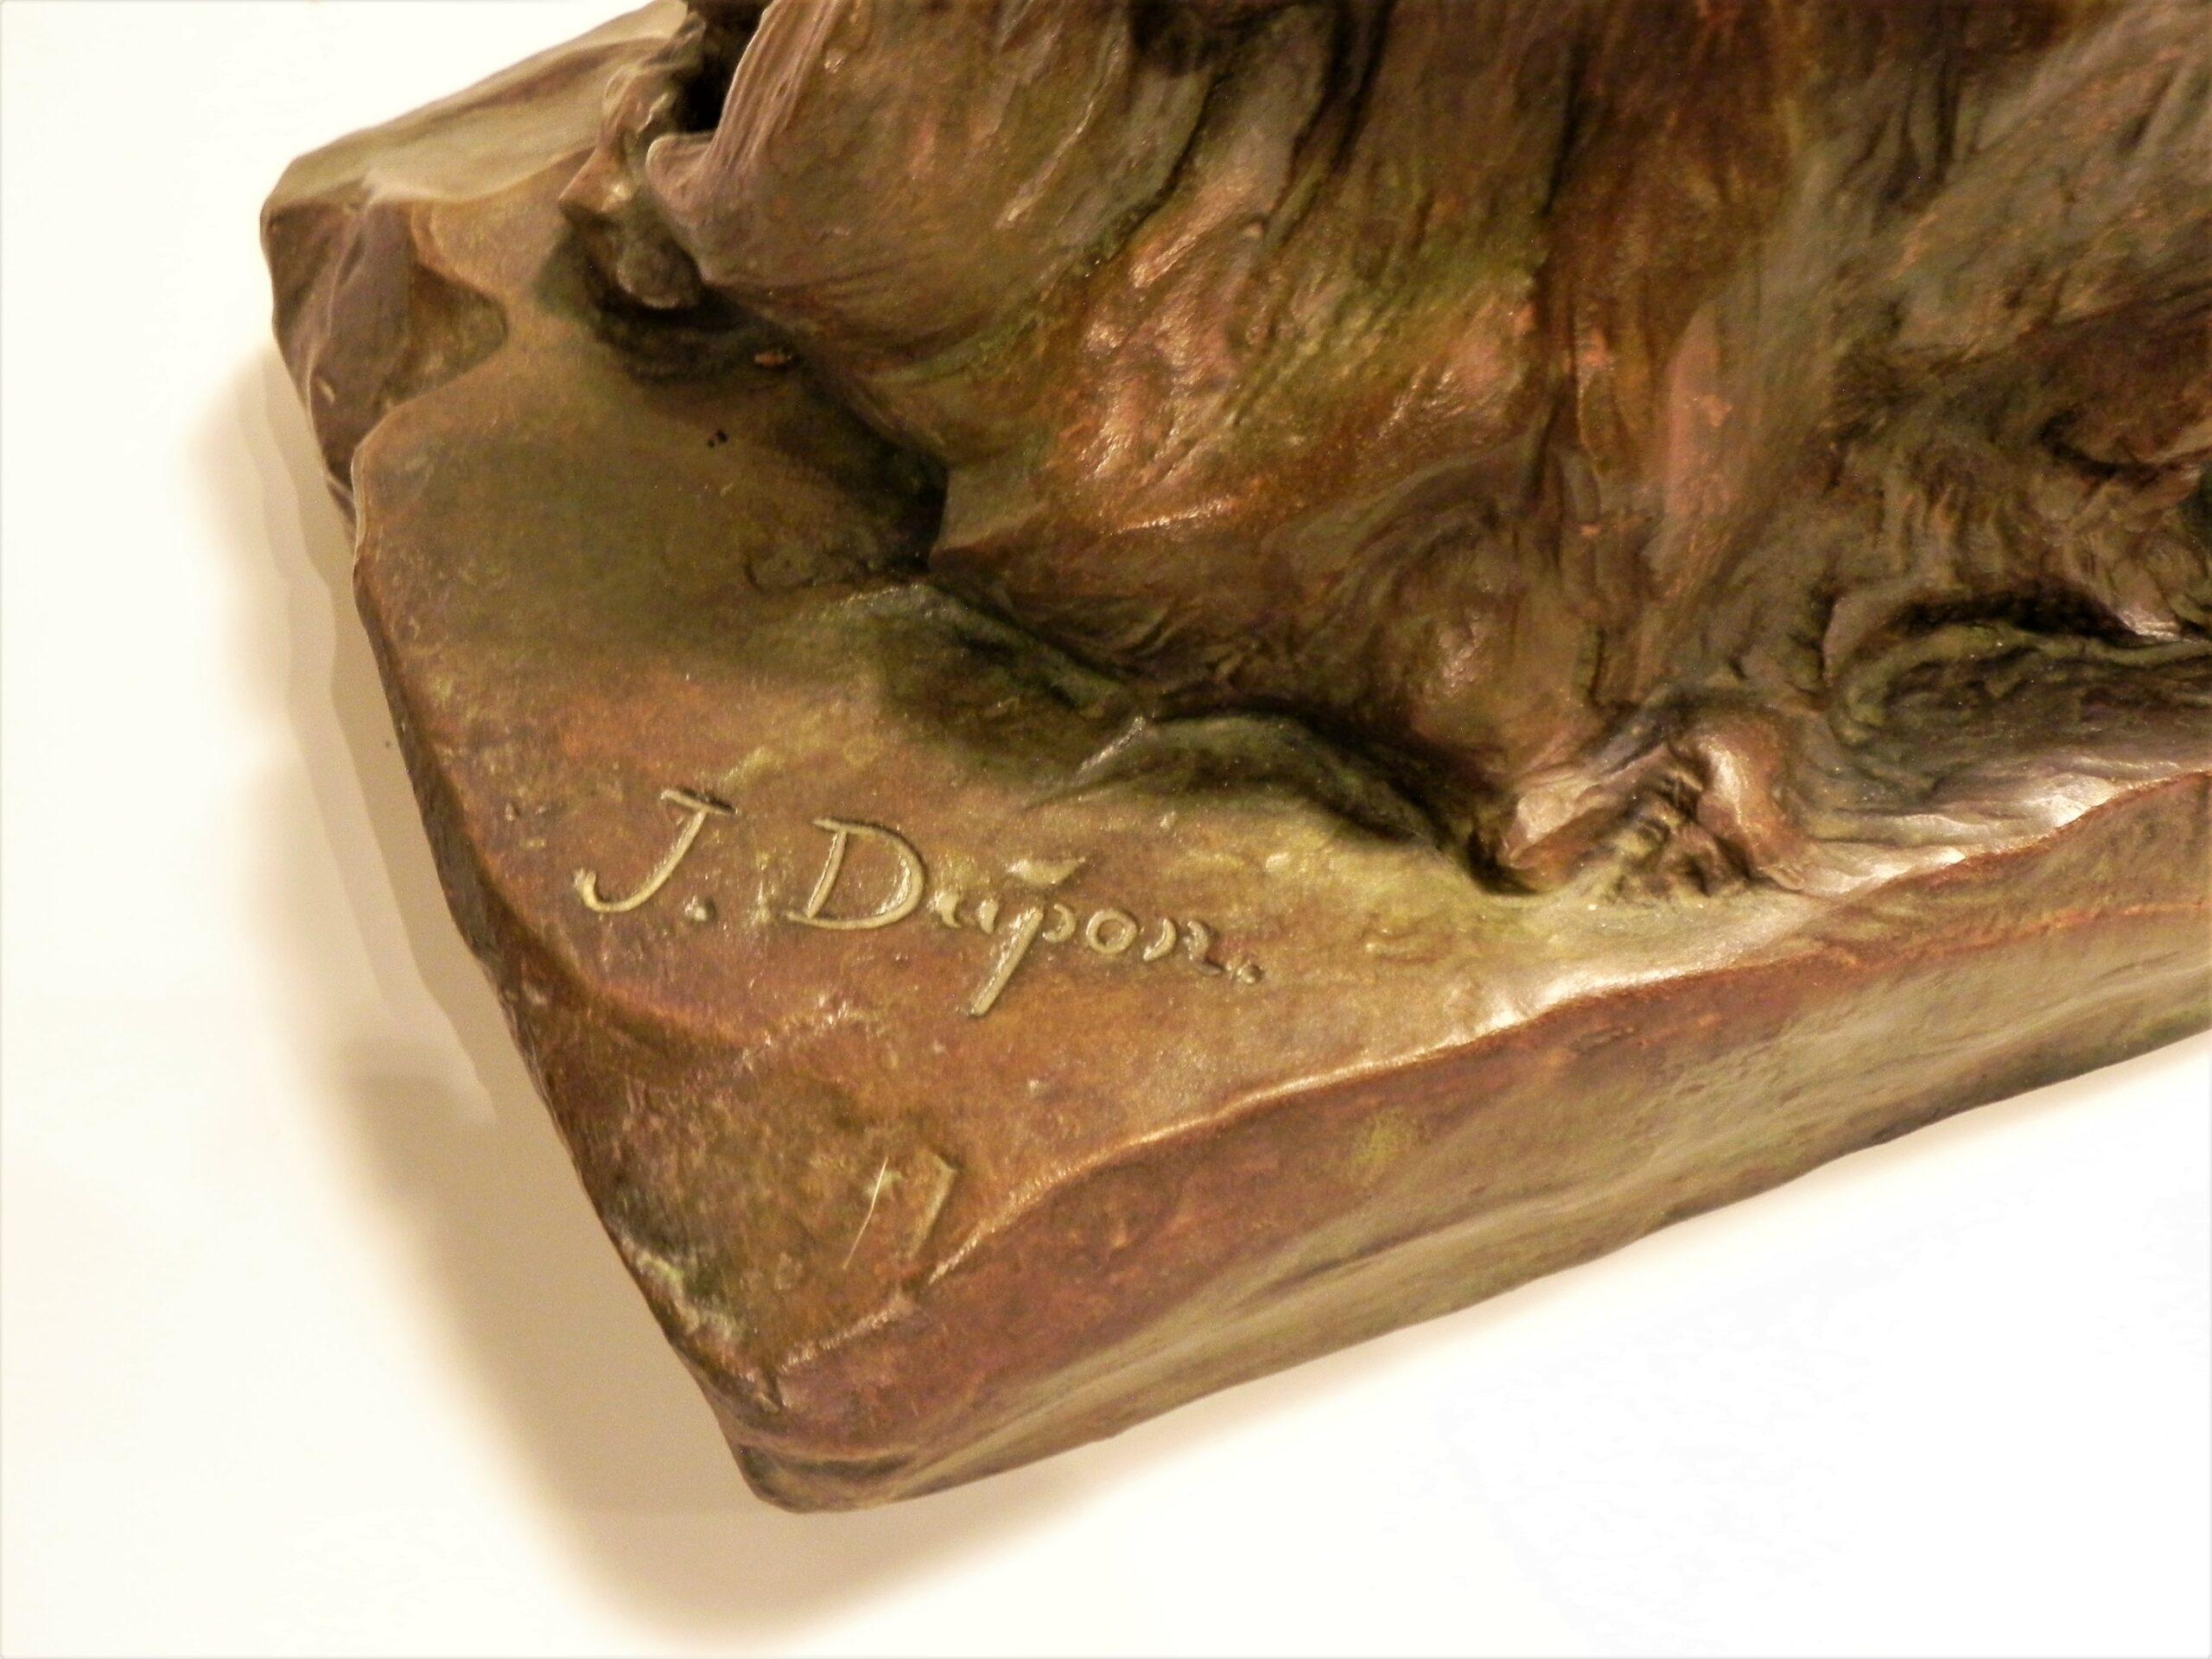 Lion couché (Ca 1900)
Une belle sculpture en bronze représentant un lion couché sur un rocher.  Cette statue de Josuë Dupon (1864 -1935) est dotée d'une  patine brune rougeâtre avec des reflets verts. Signé Josuë Dupon sur la terrasse.

Titre : Lion